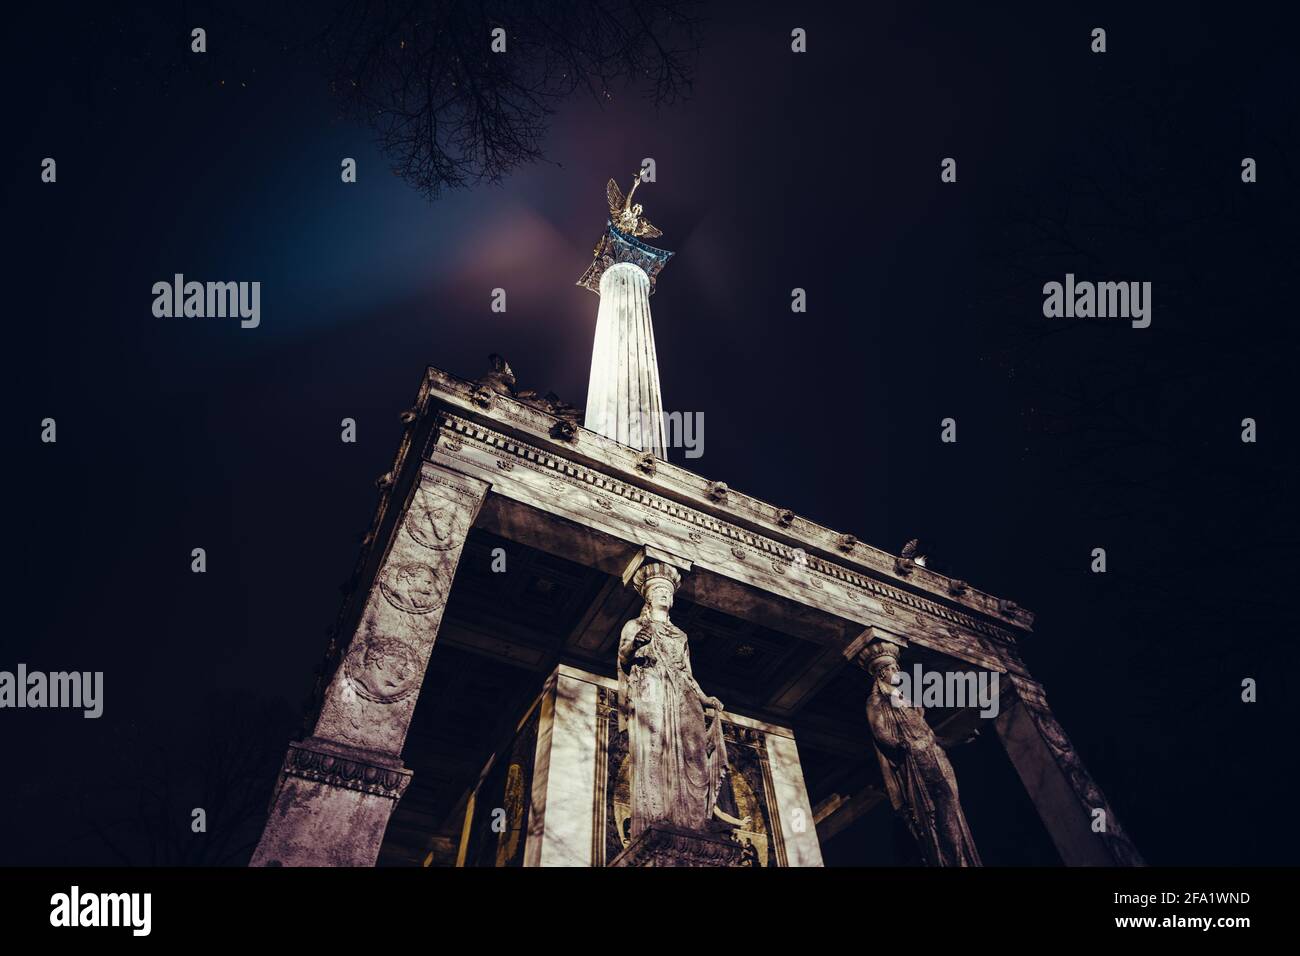 Das Friedensengel in München bei Nacht. Ein Denkmal mit einem goldenen Engel auf der Oberseite, Mosaiksteinen und einigen Statuen. Erbaut während der Barockepoche. Stockfoto